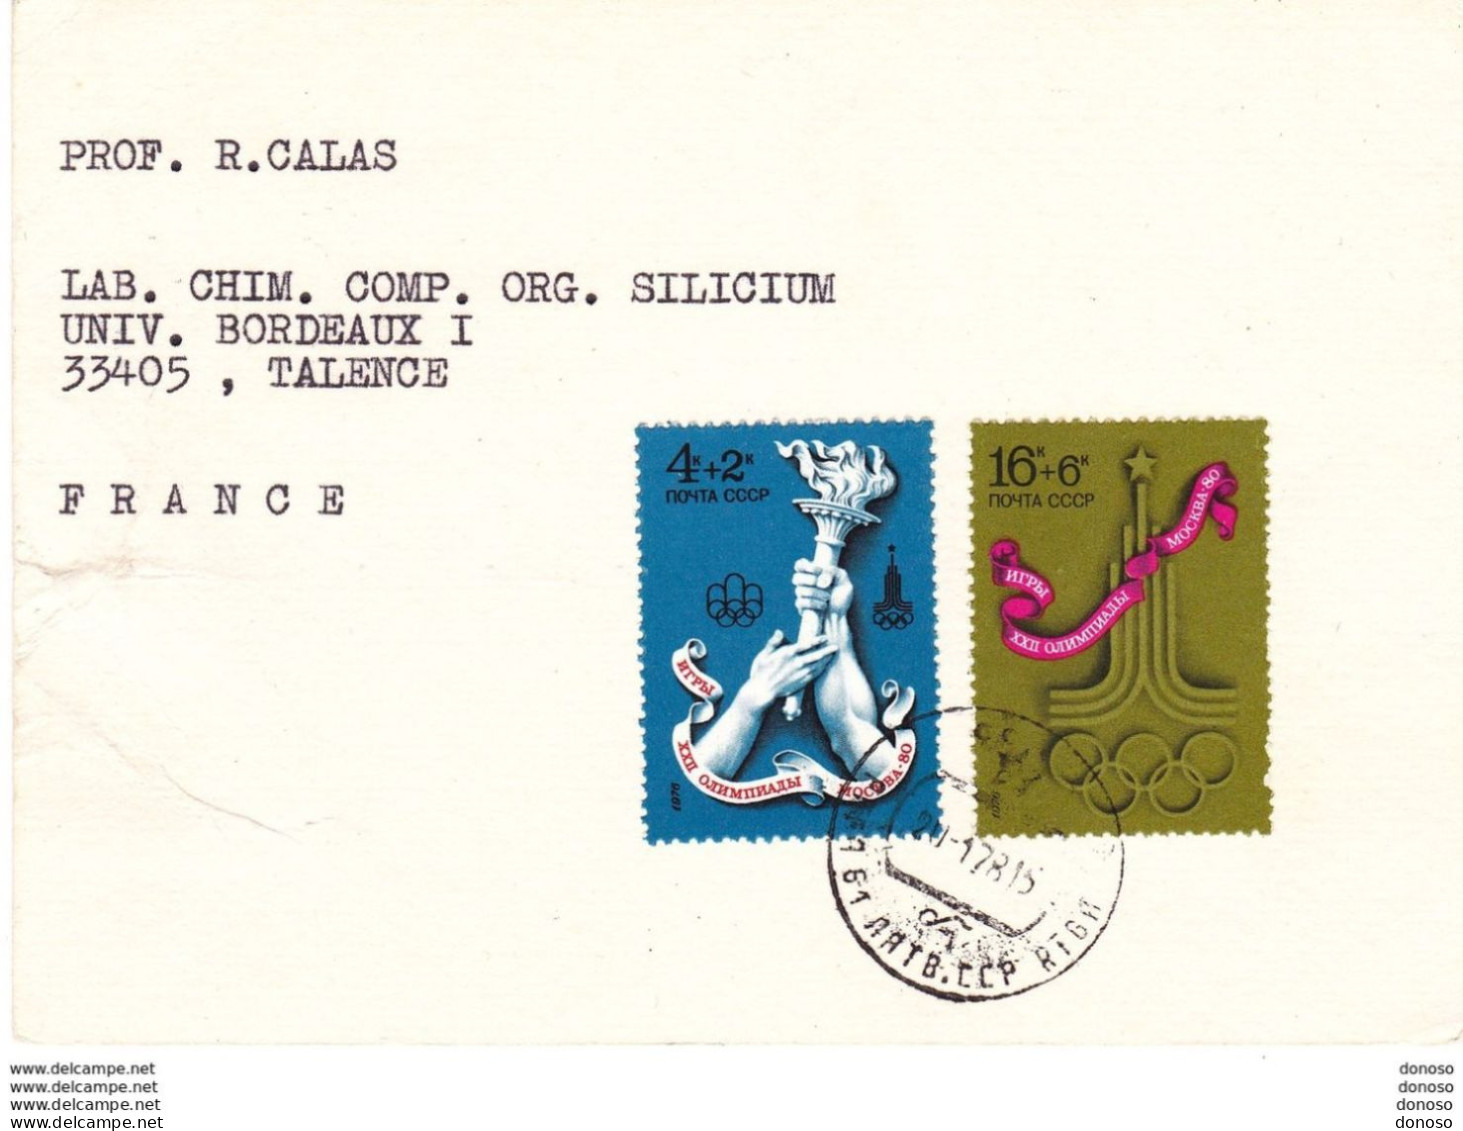 URSS 1978 Carte Pour Faculté Des Sciences De Bordeaux, Timbres Jeux Olympiques - Cartas & Documentos